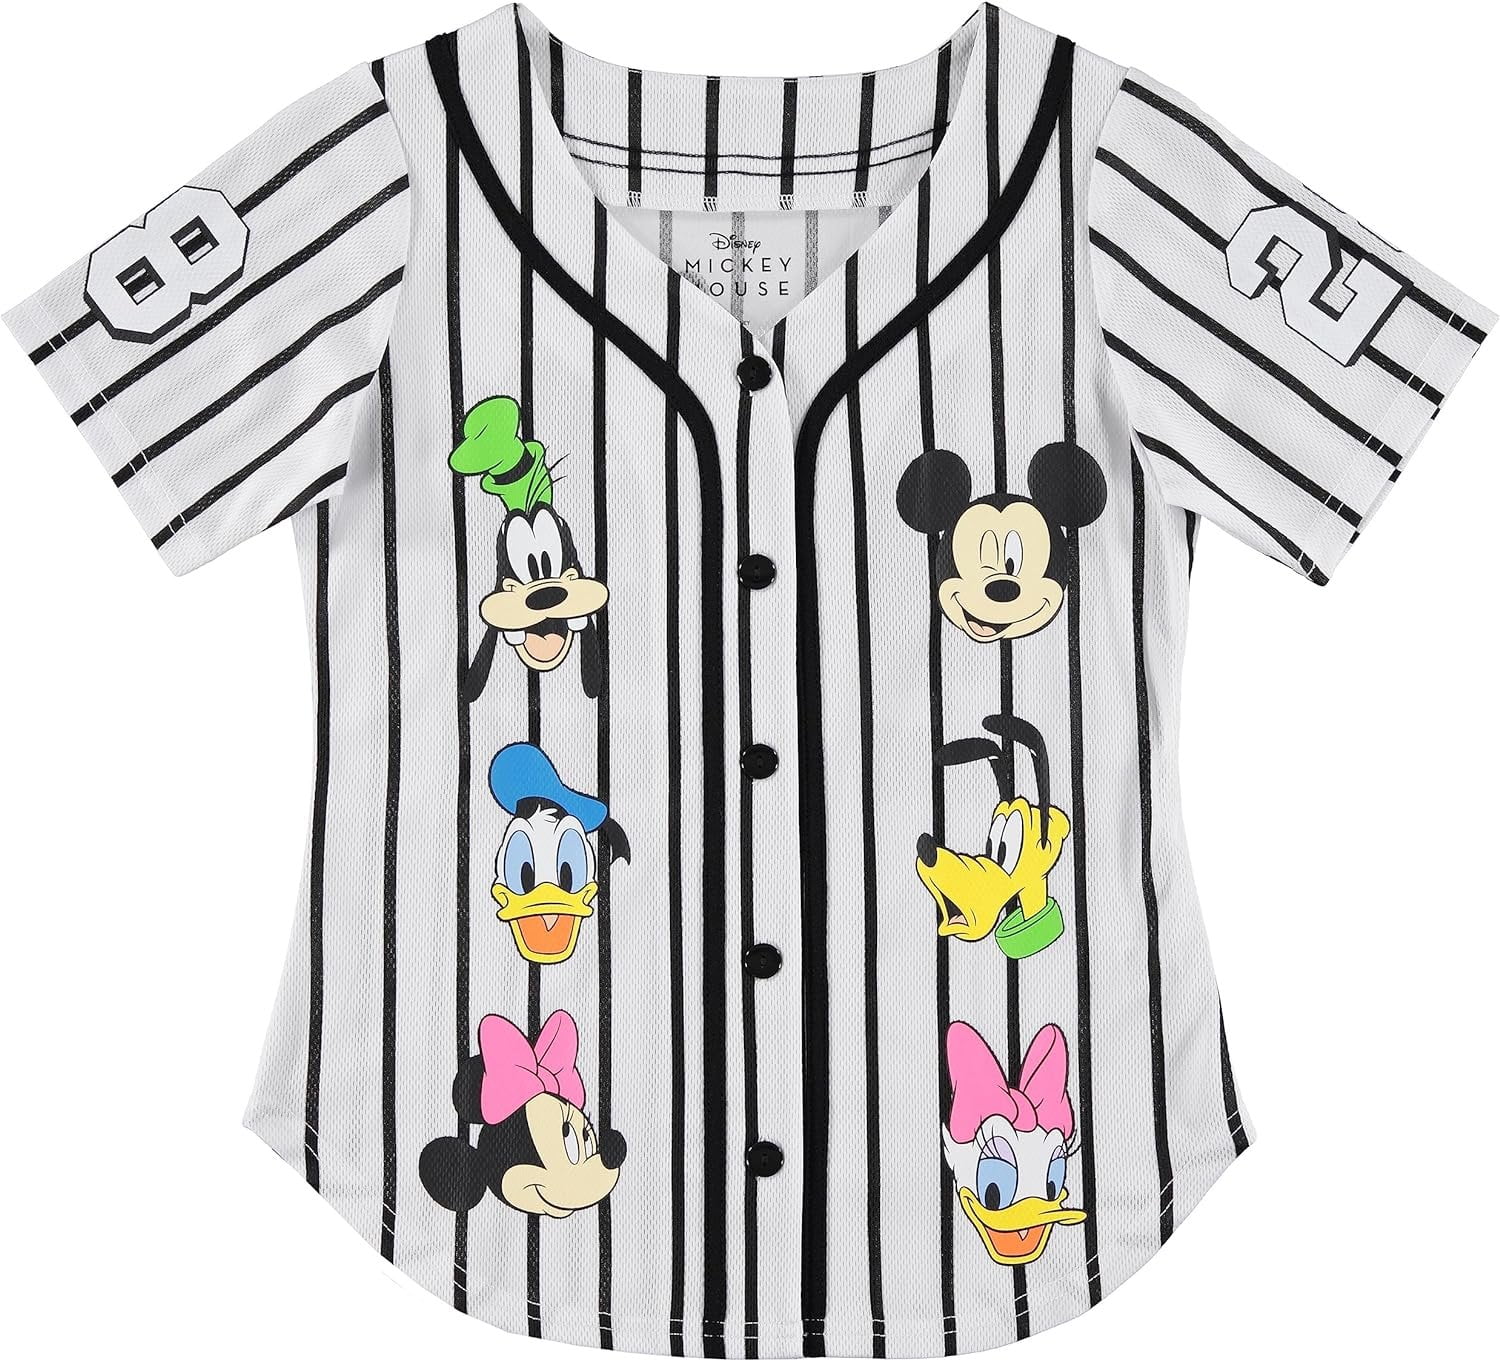 Disney Girls Baseball Jersey T-Shirt with Lilo & Stitch and Mickey ...